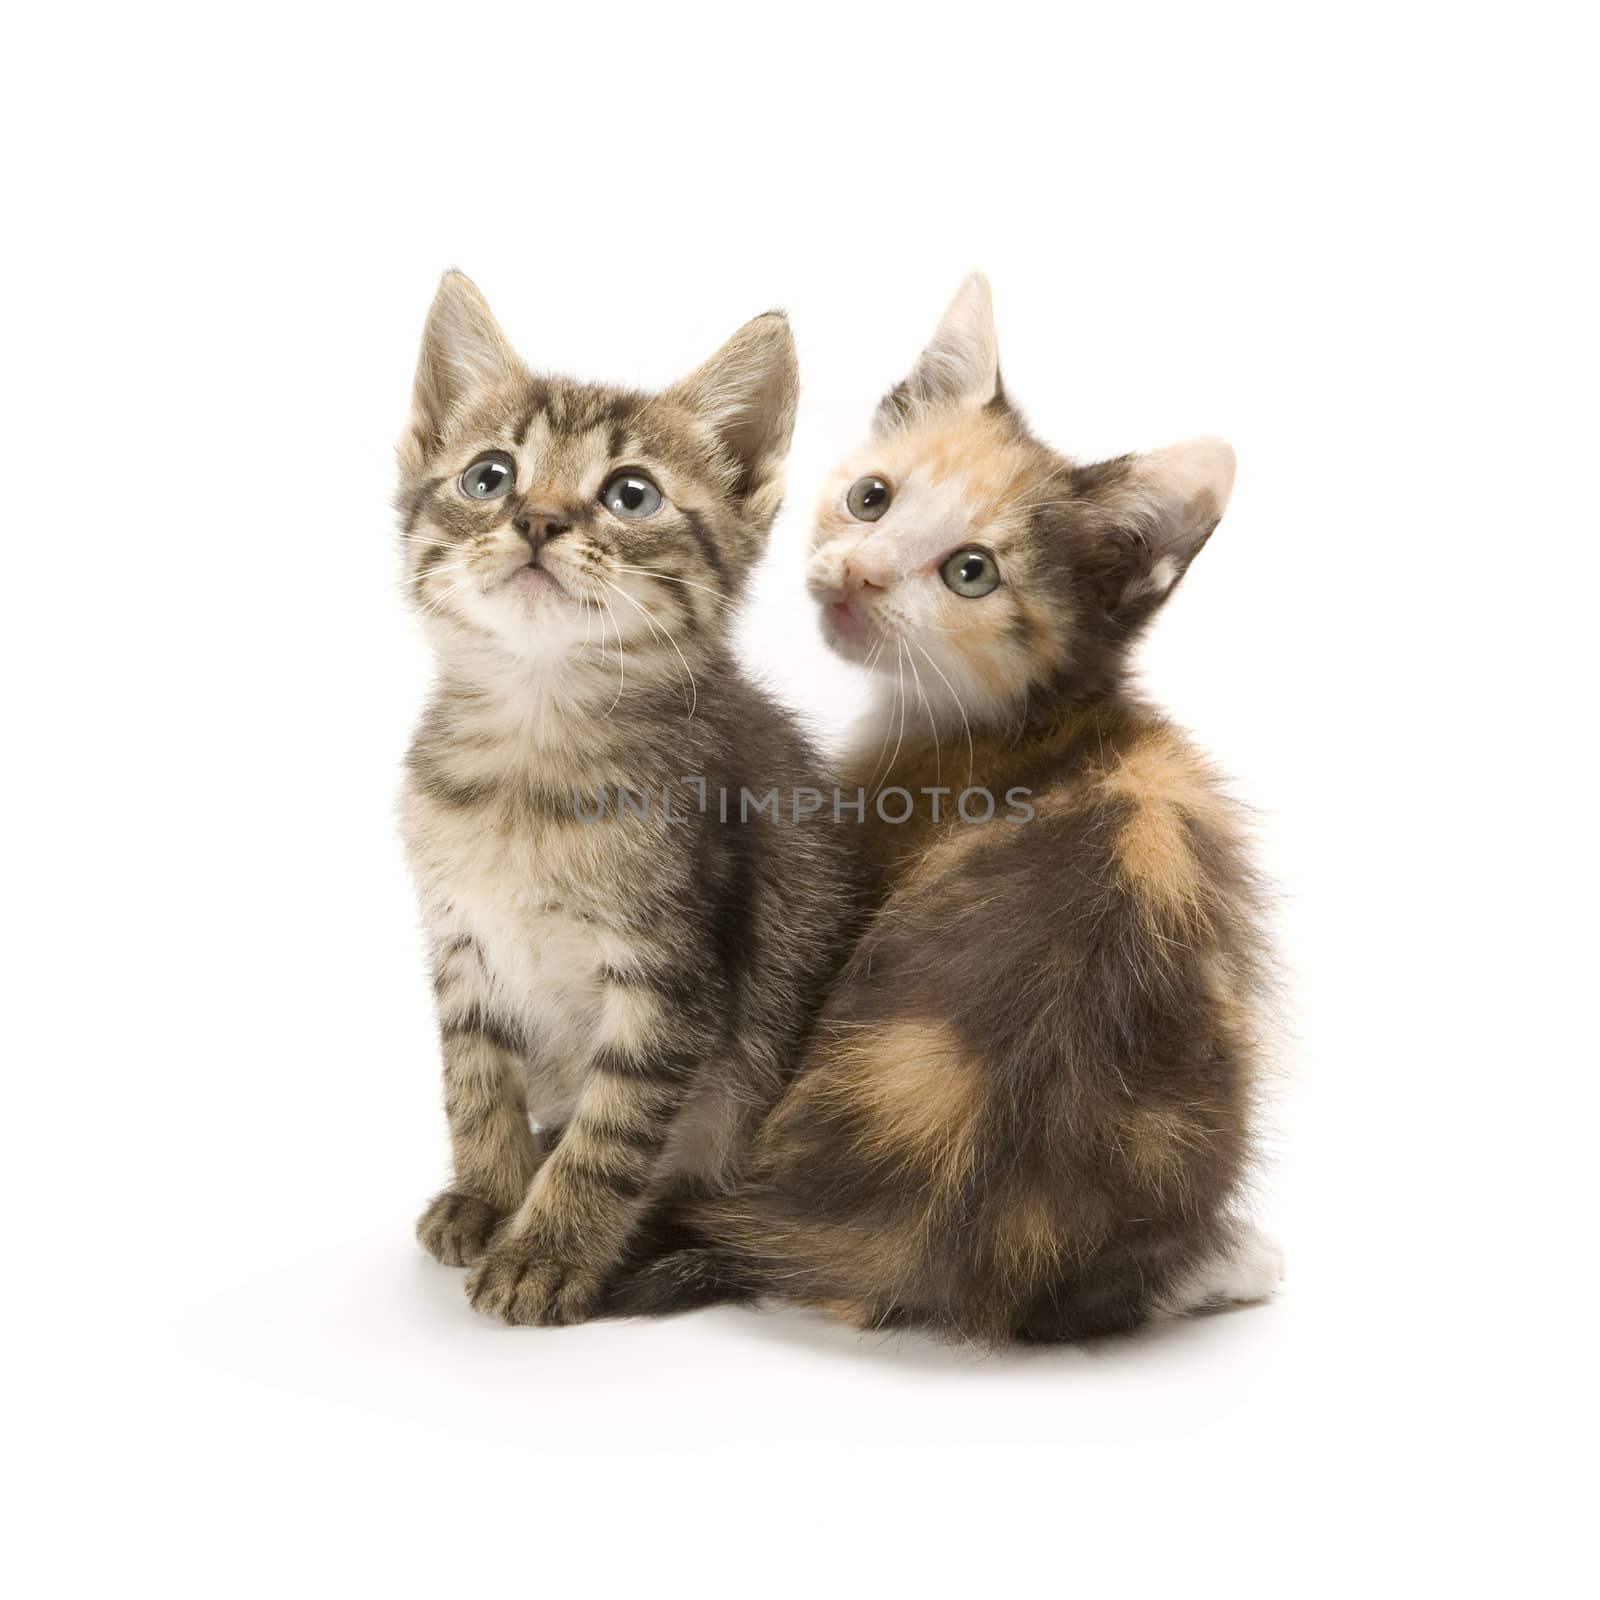 Kittens by stefan_andronache